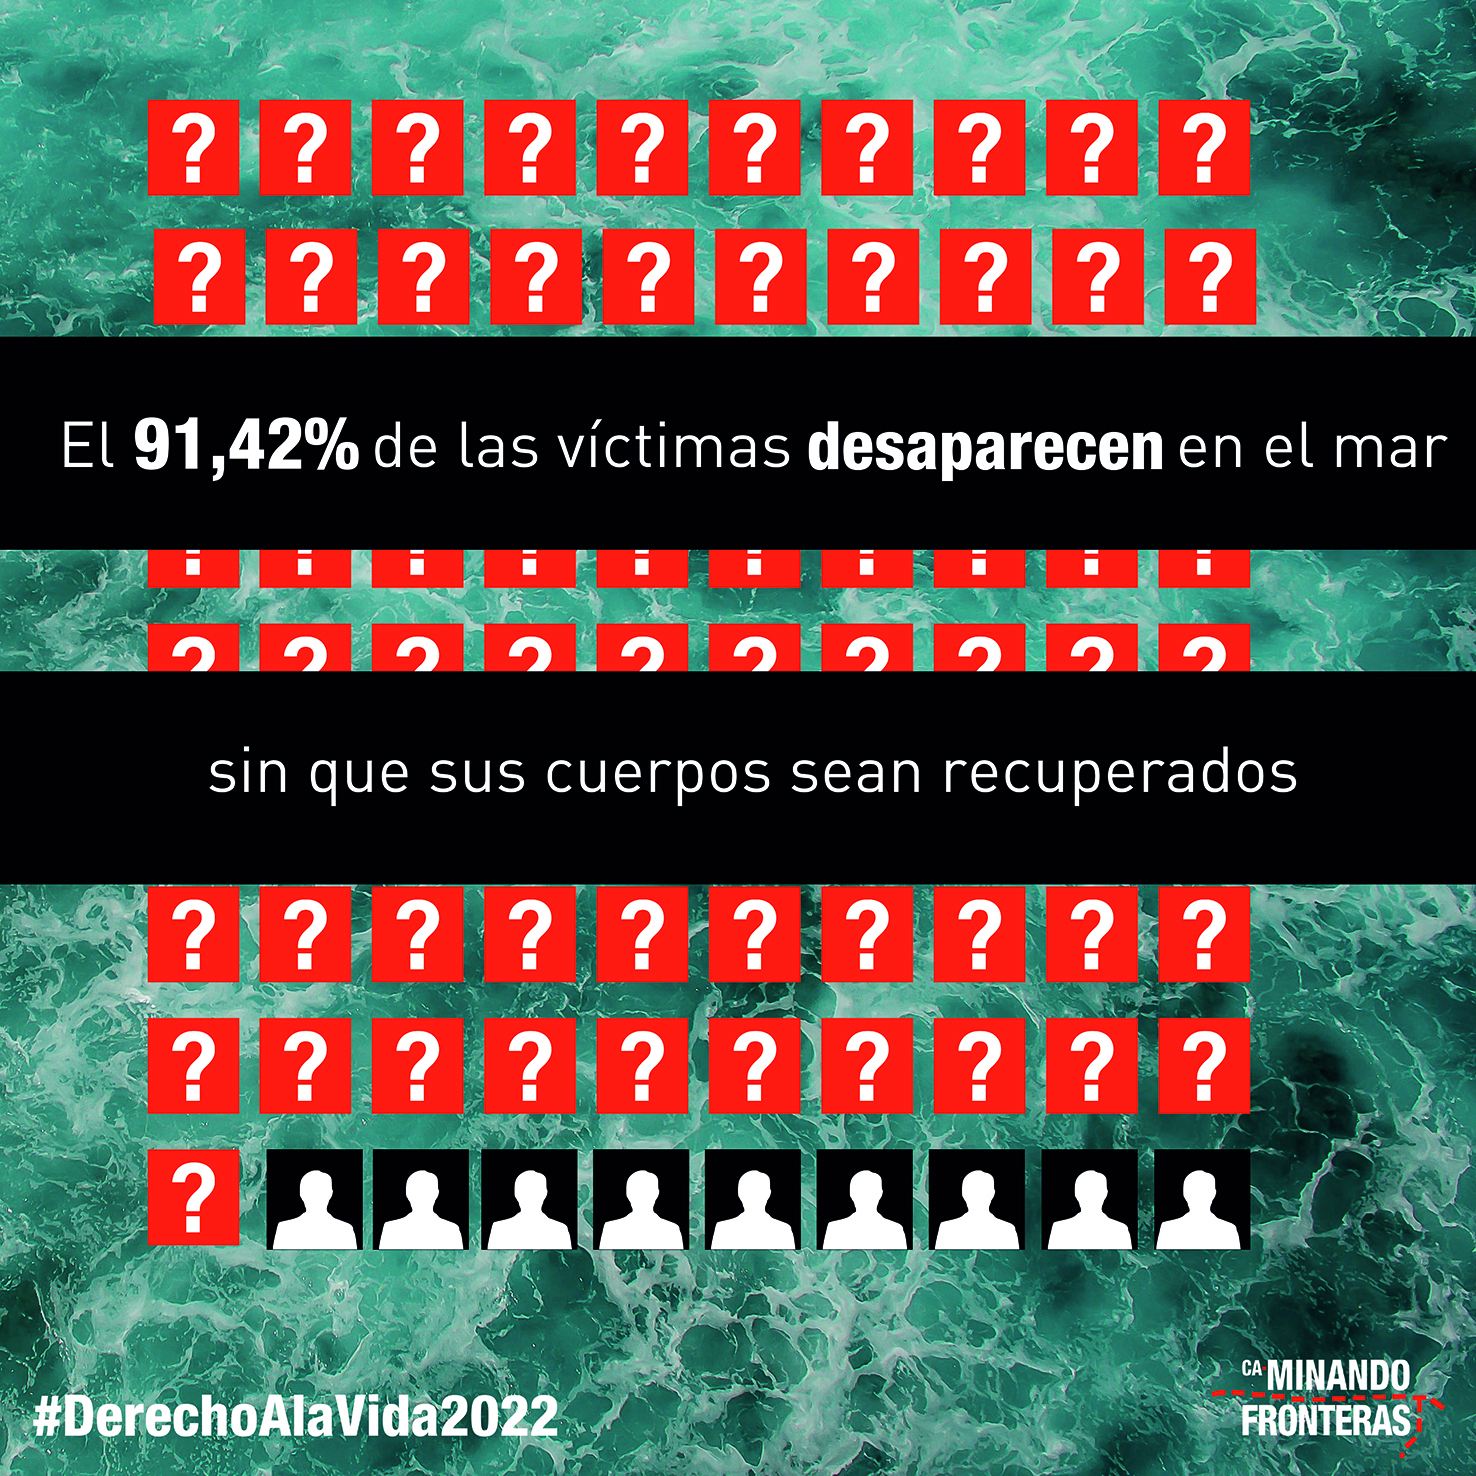 El 91,42% de las personas que pierden la vida en el mar desaparecen sin que sus cuerpos sean recuperados.